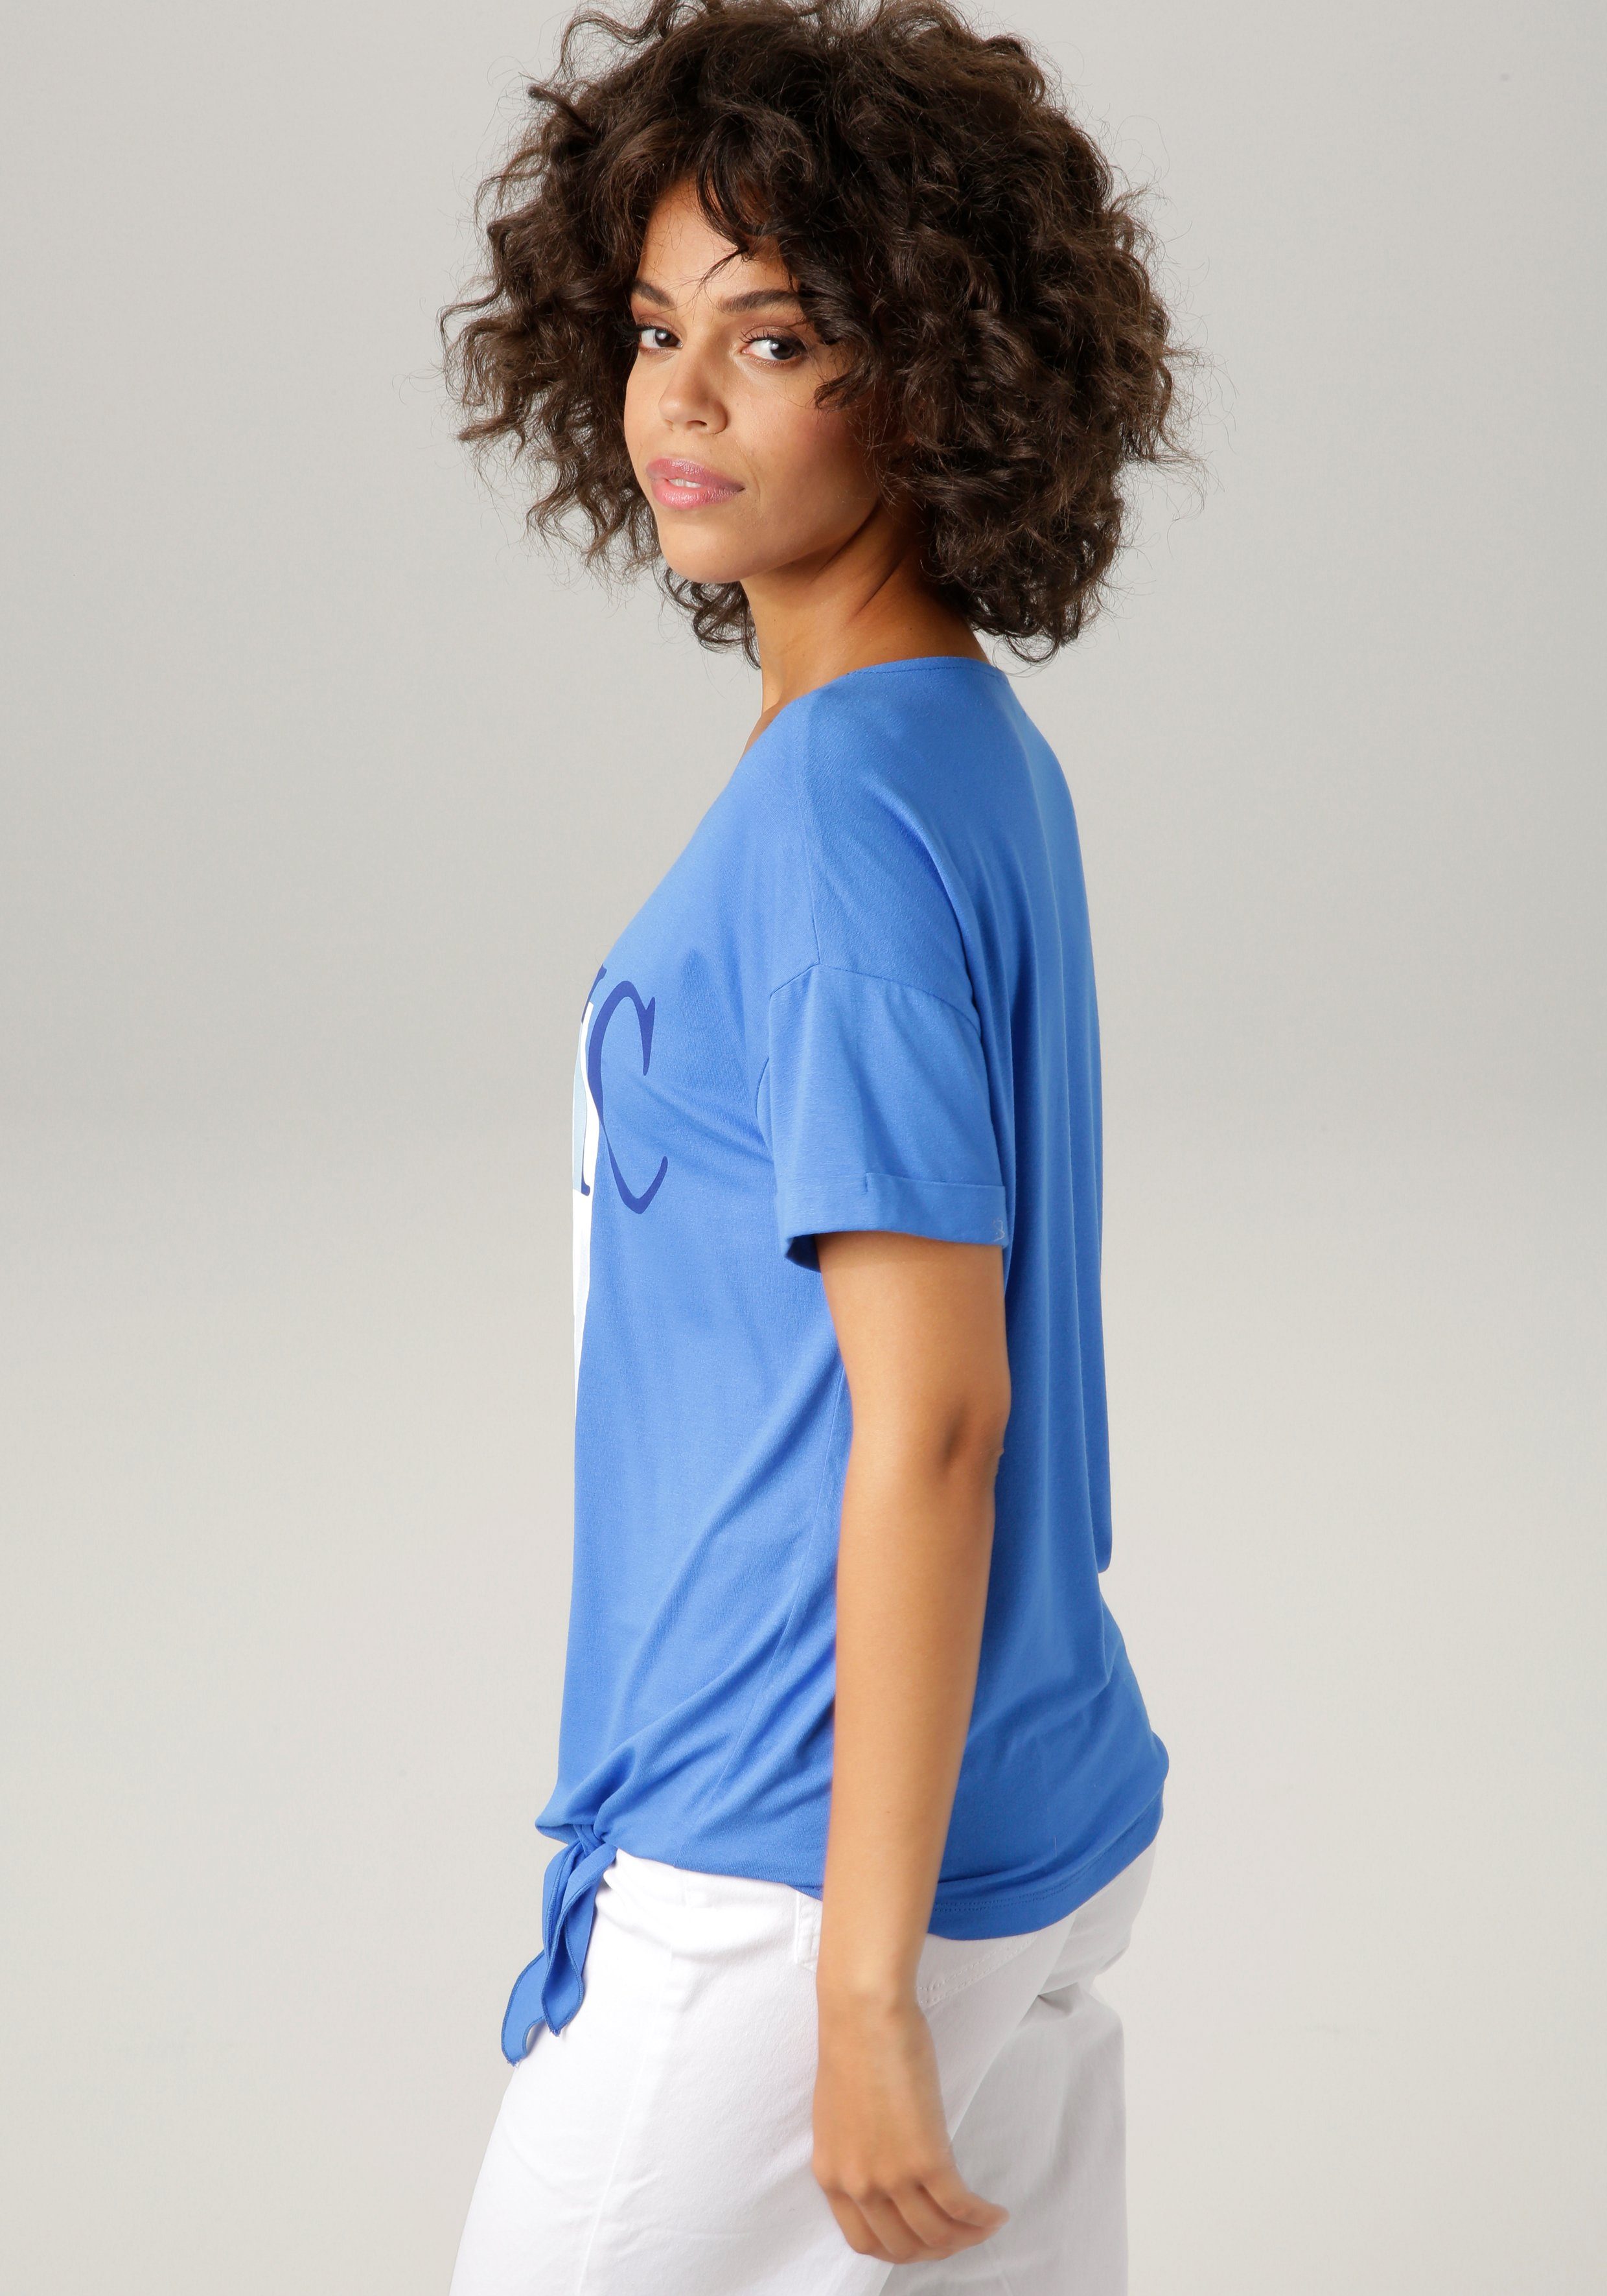 CASUAL T-Shirt mit royalblau-marine-wollweiß-hellpetrol-sand-schwarz "ethnischem" Aniston ausdrucksstarkem Frontdruck